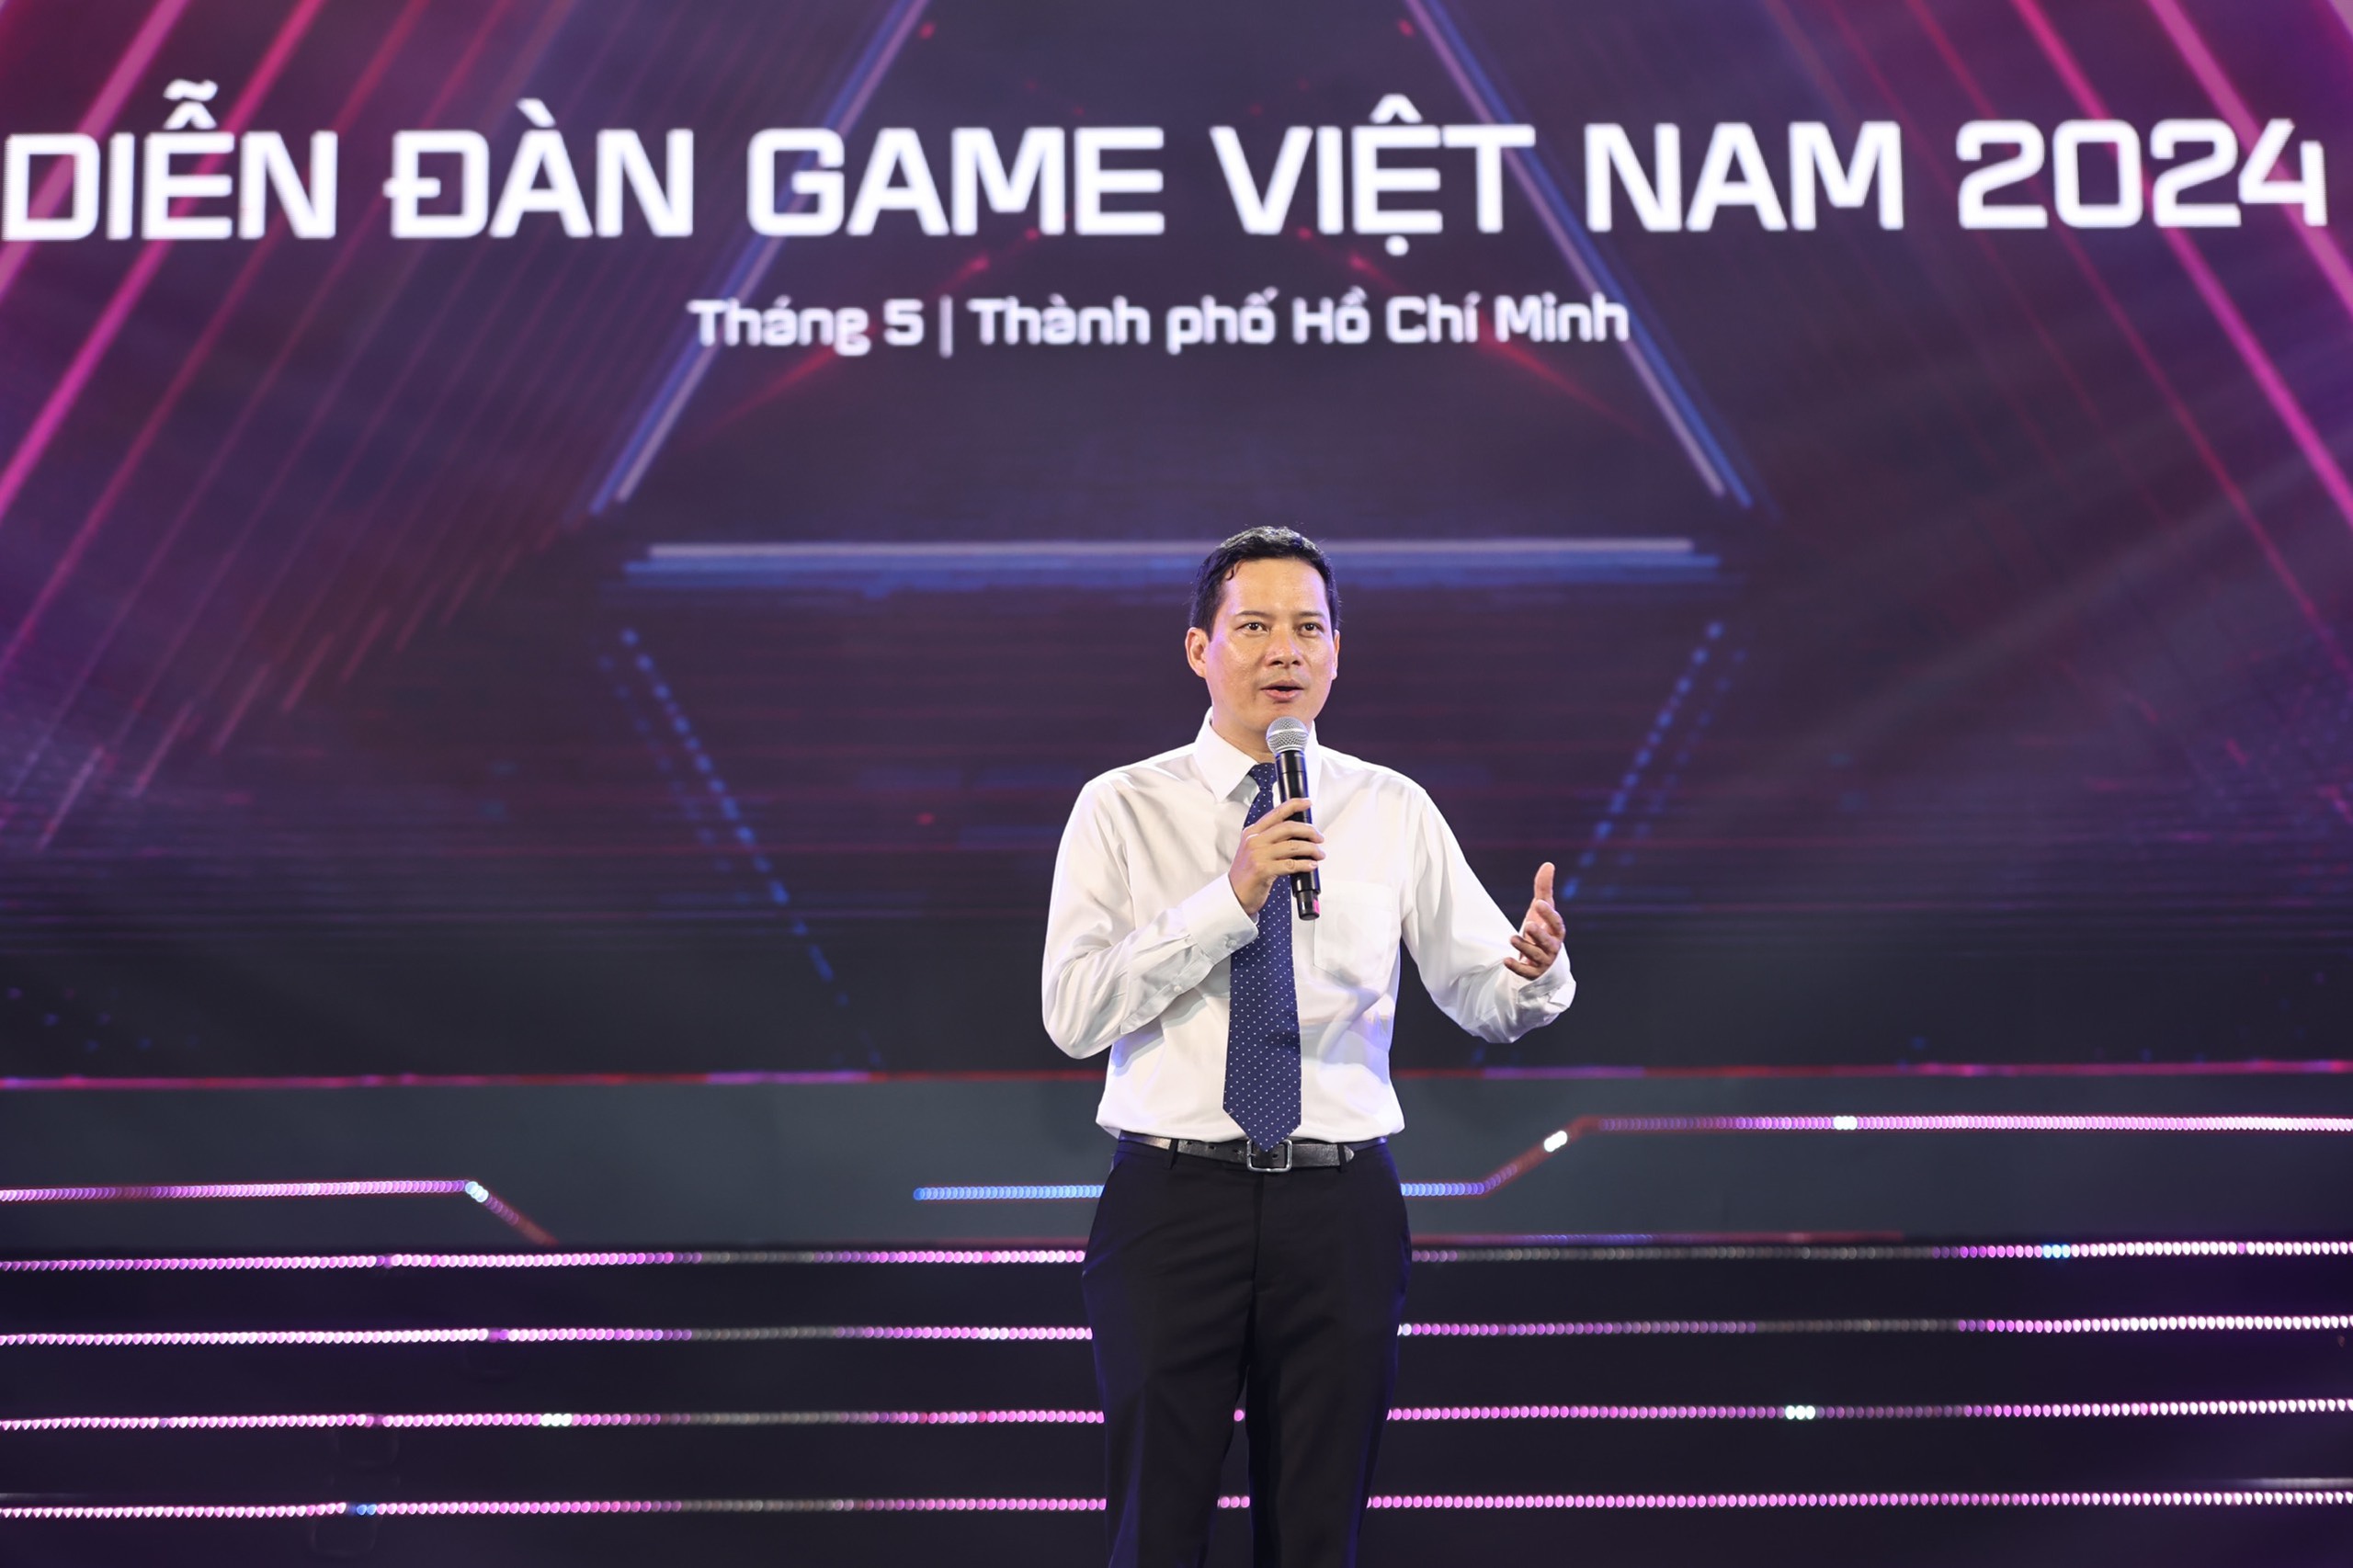 Ông Lê Quang Tự Do, Cục trưởng Cục Phát thanh, Truyền hình và Thông tin điện tử Bộ Thông tin và Truyền thông kiêm Chủ tịch Ban tổ chức GameVerse Việt Nam thừa nhận, sự kiện này dù mới diễn ra năm thứ 2 nhưng đã thu hút được sự quan tâm rất lớn . Sự quan tâm của cộng đồng giúp ngành game Việt Nam có những dấu hiệu tích cực.